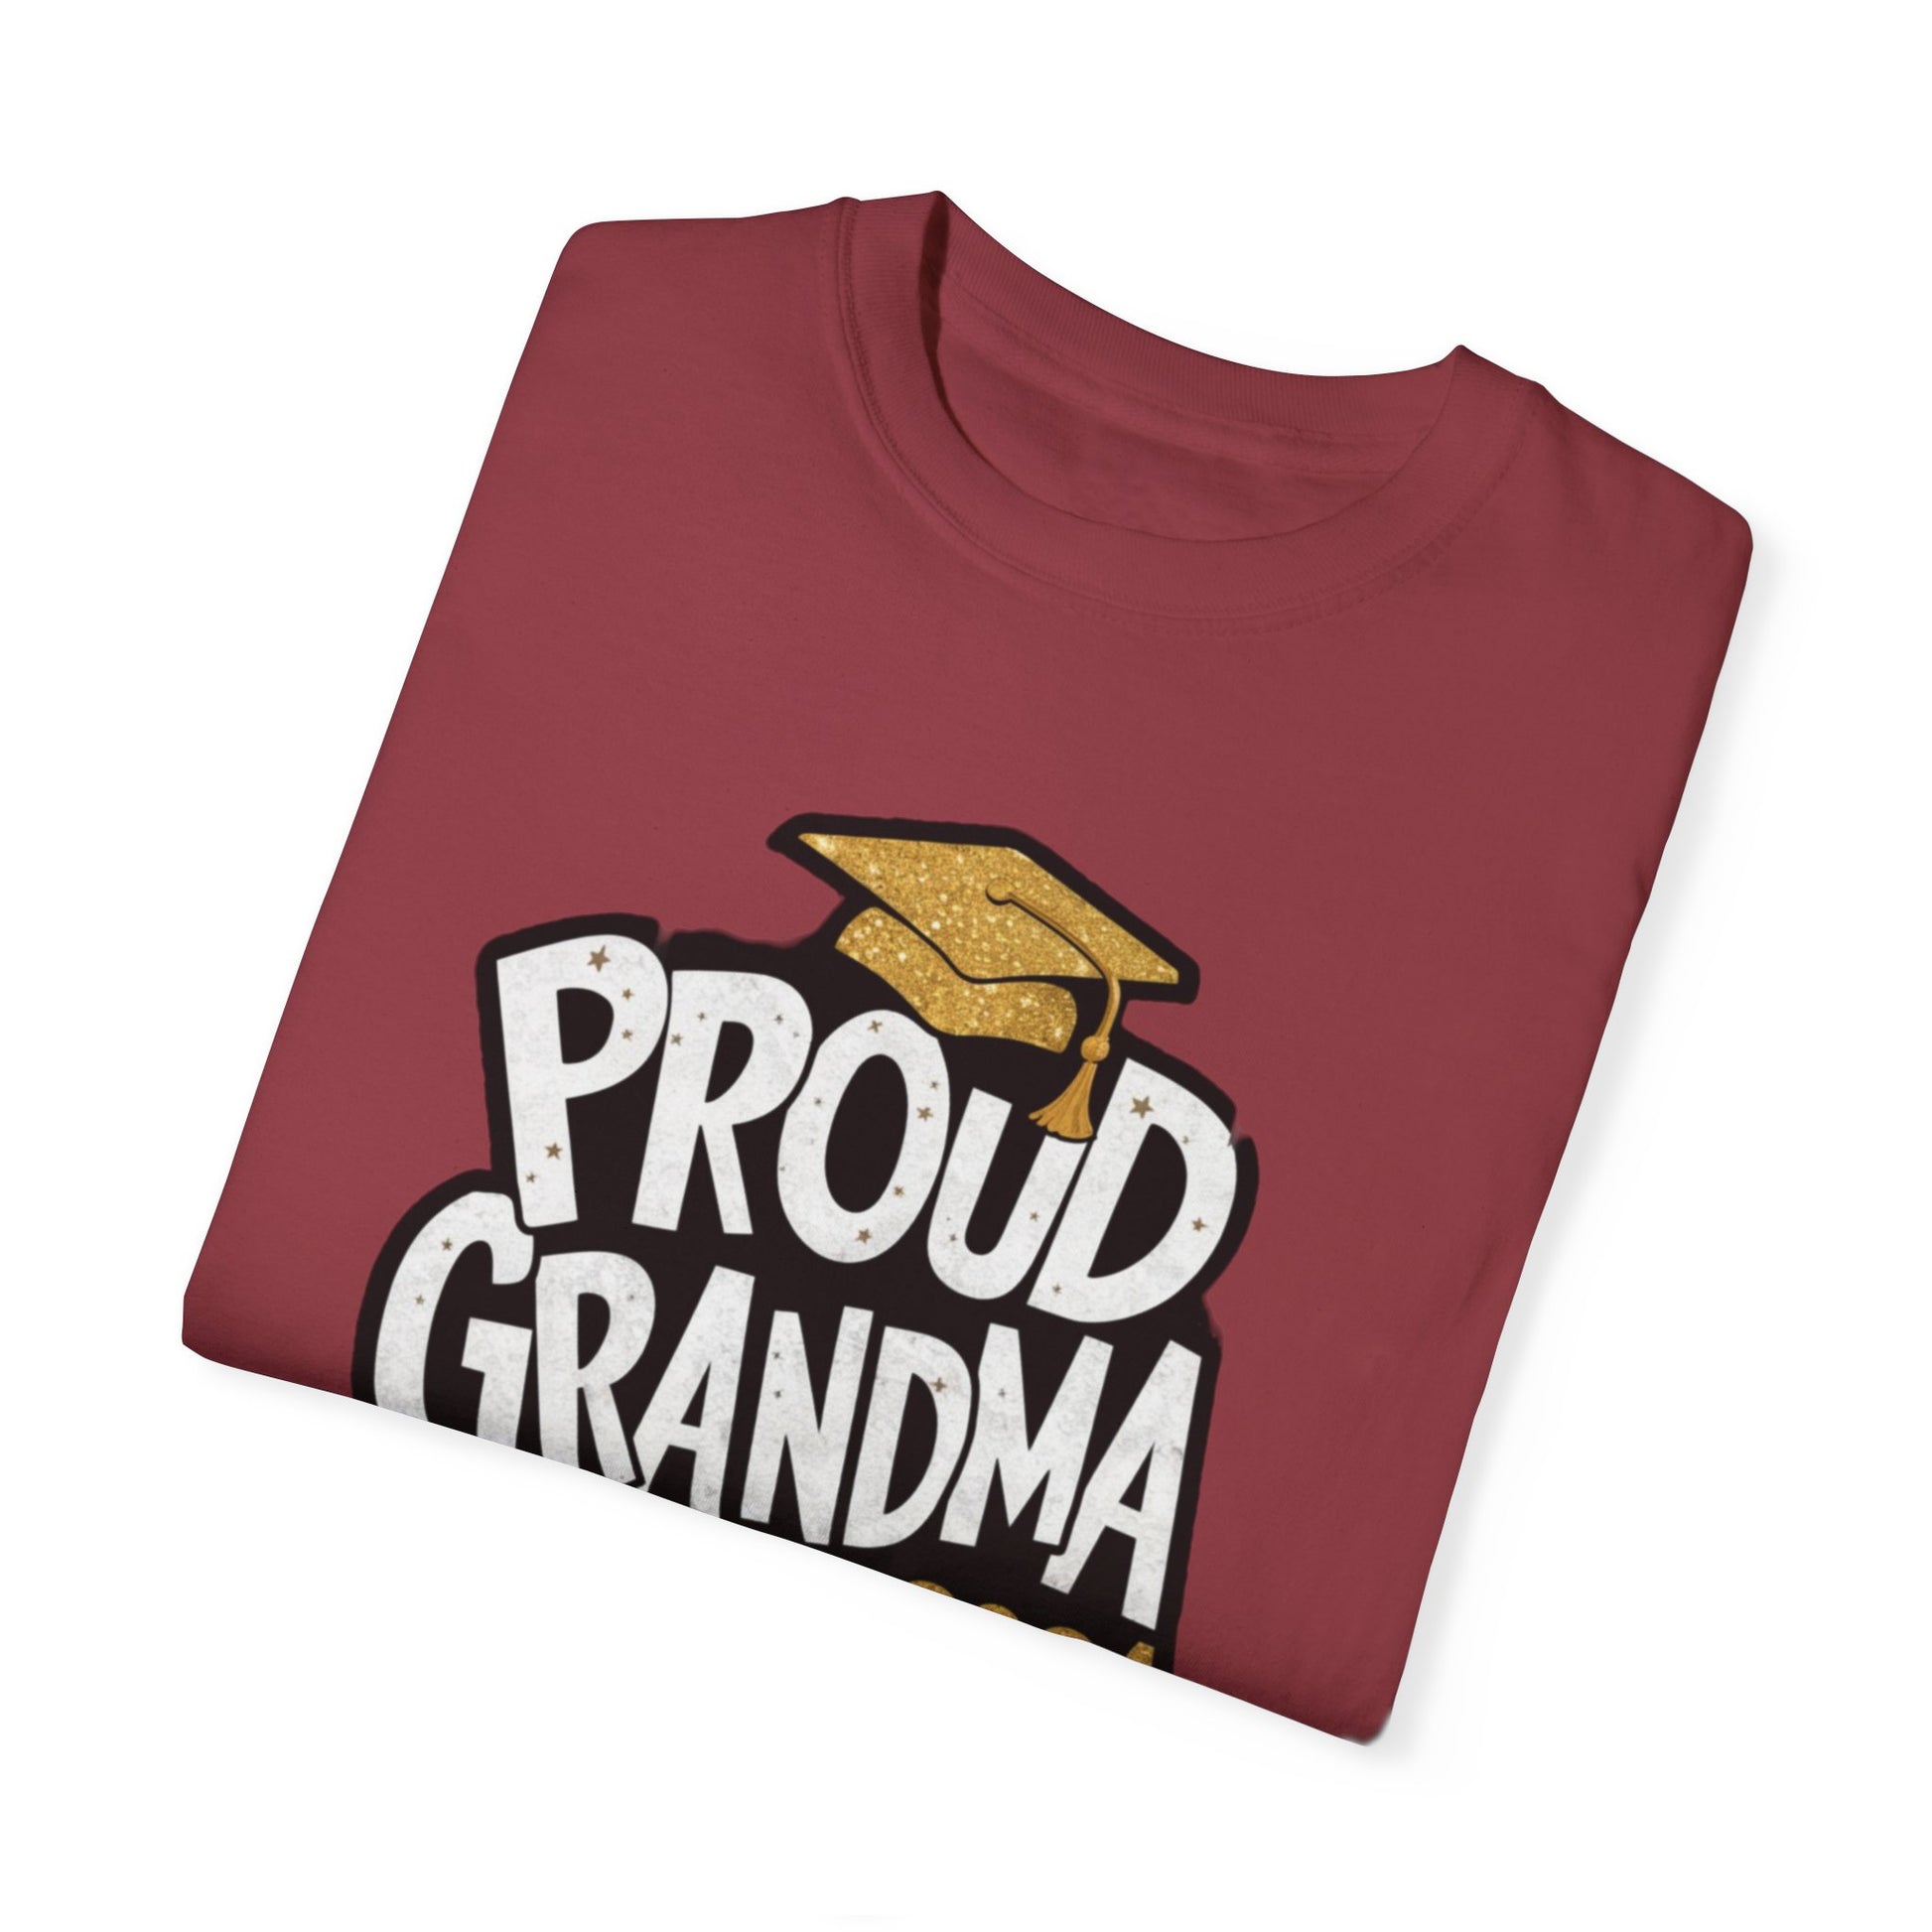 Proud of Grandma 2024 Graduate Unisex Garment-dyed T-shirt Cotton Funny Humorous Graphic Soft Premium Unisex Men Women Chili T-shirt Birthday Gift-35